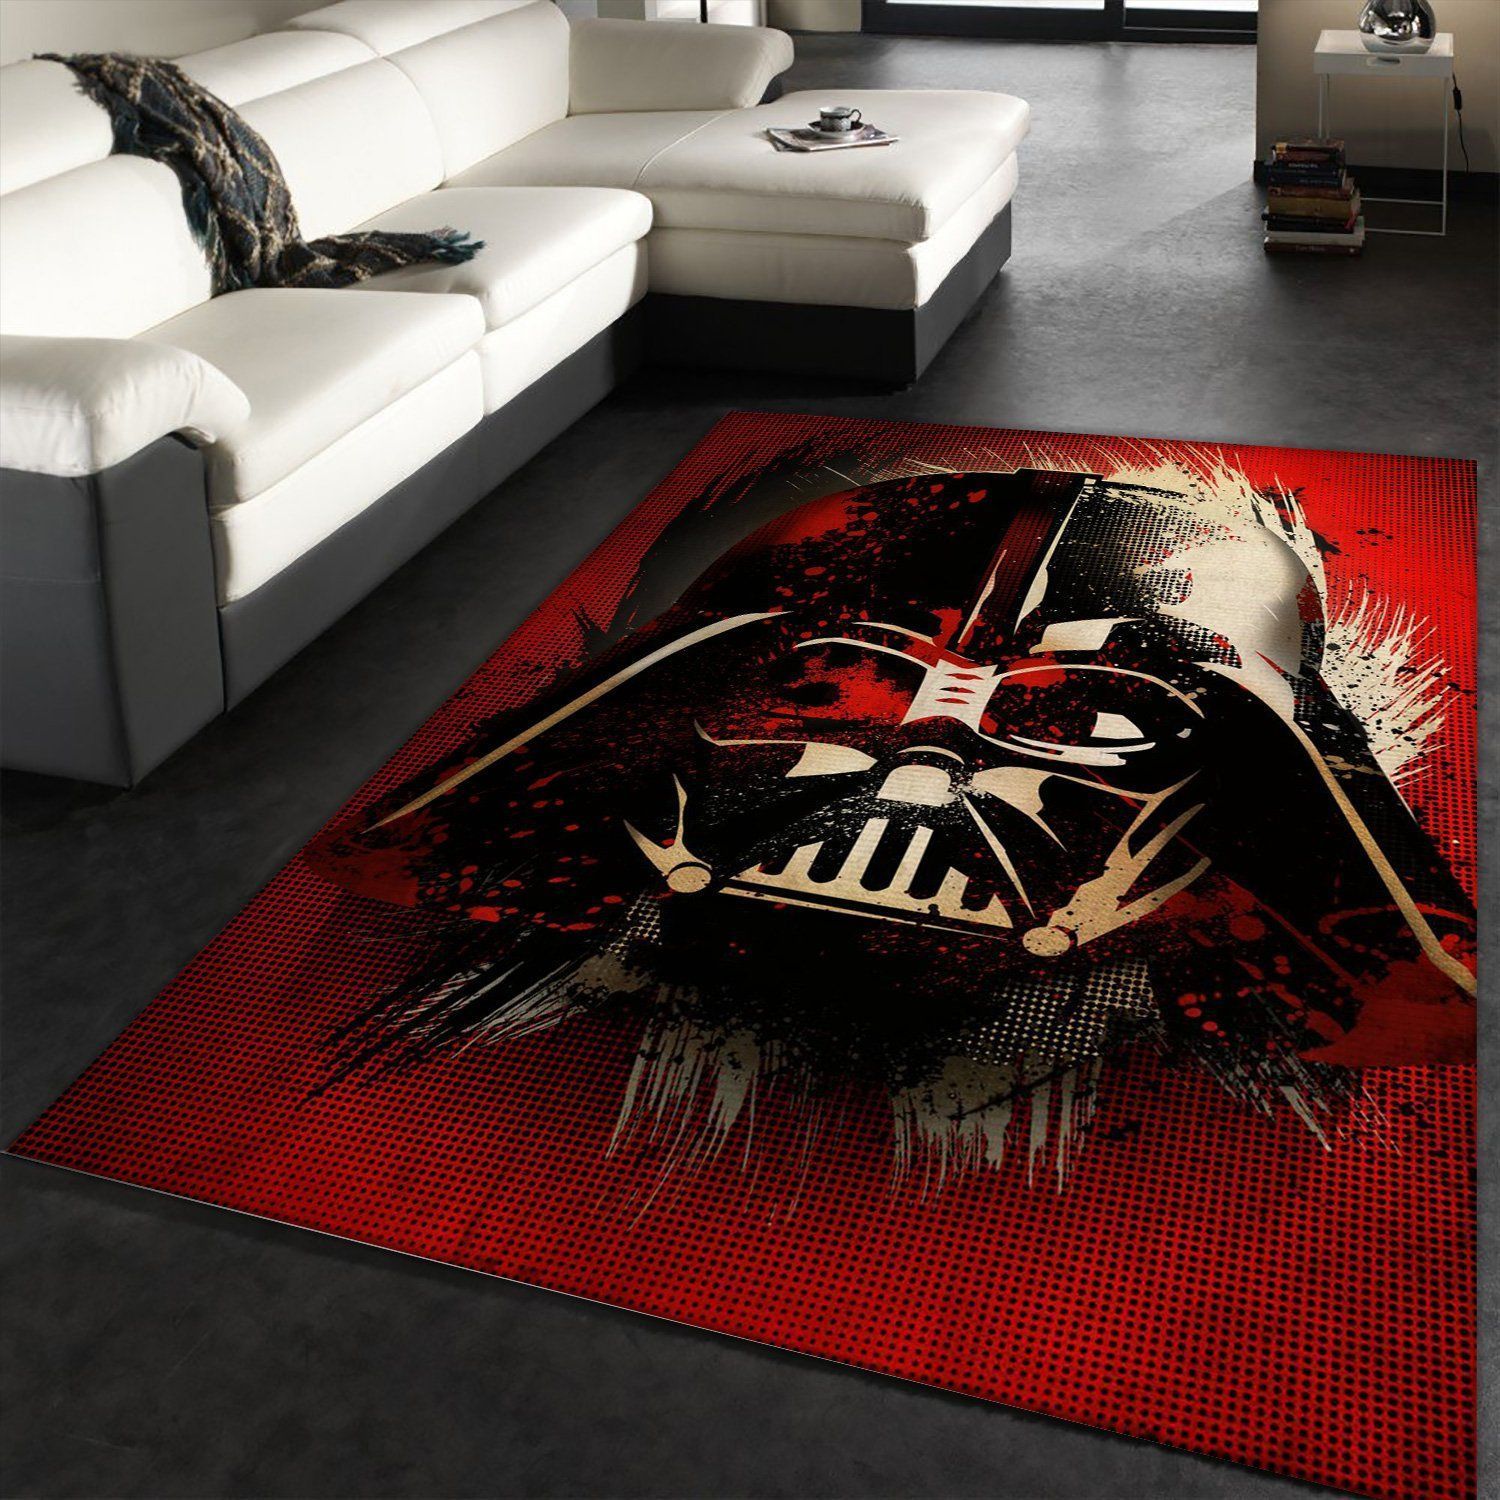 Vader Splatter Star Wars Movie Rug Star Wars Visions Of Darth Vader Rug Home Decor Floor Decor - Indoor Outdoor Rugs 1